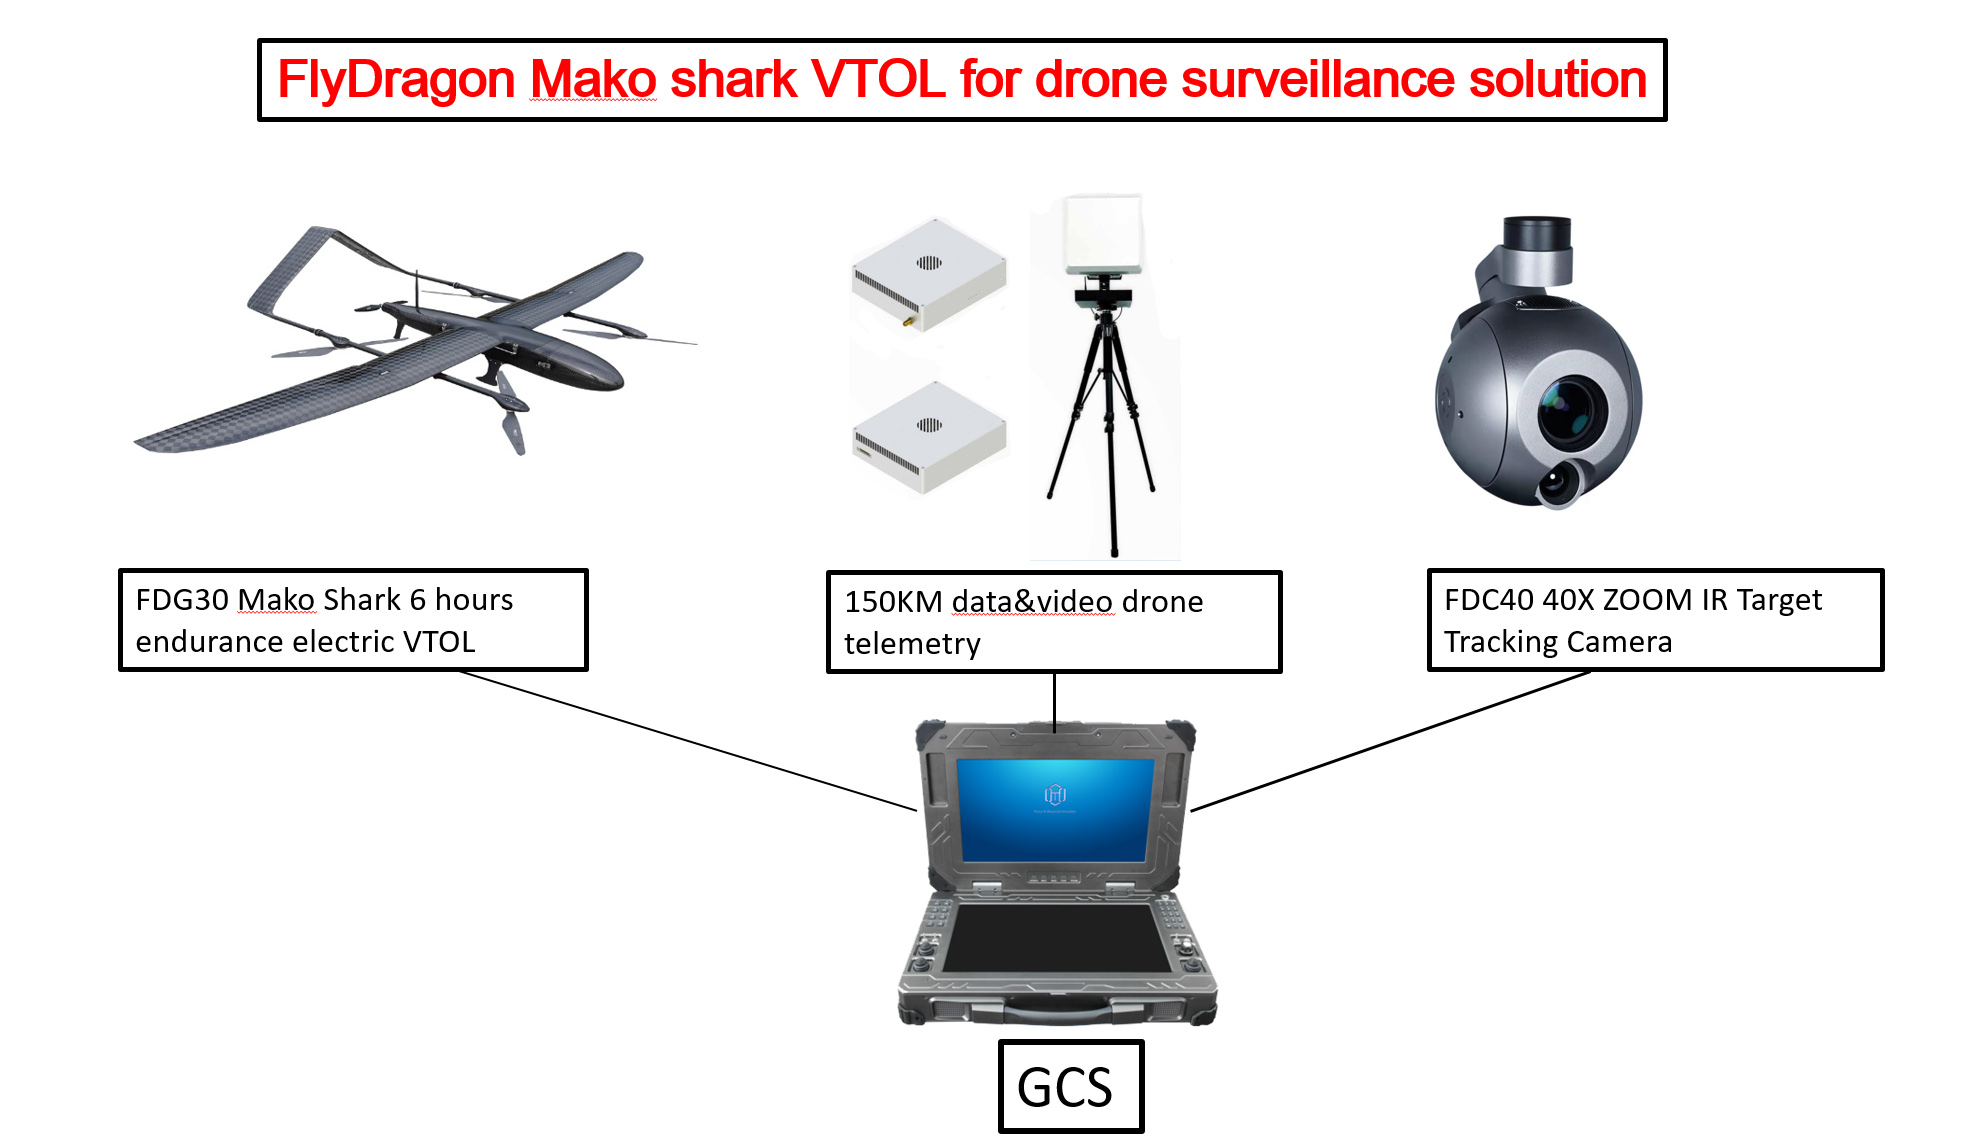 FDG30 Mako shark VTOL uav solution for border surveillance